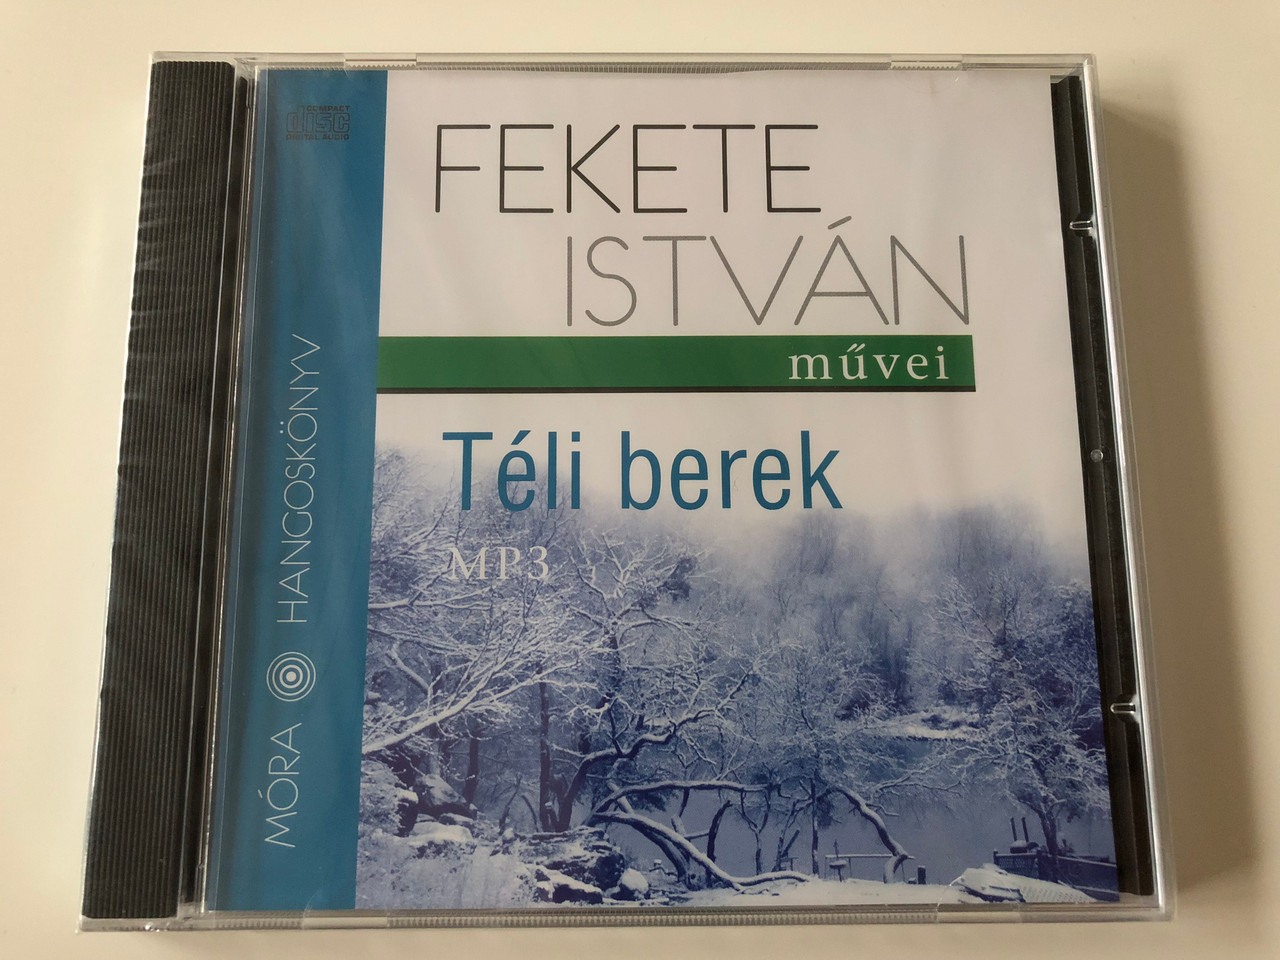 Téli Berek by Fekete István - Audio Book - MP3 CD / Read by Széles Tamás /  Recording director: Tomasevics Zorka / Móra hangoskönyv 2010 / Hungarian  Youth novel - bibleinmylanguage